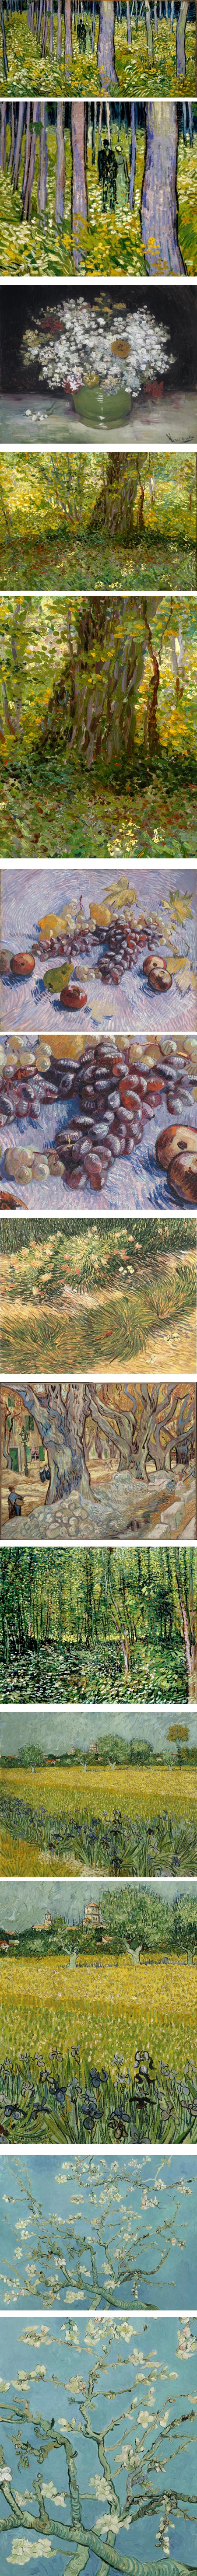 Van Gogh: Up Close